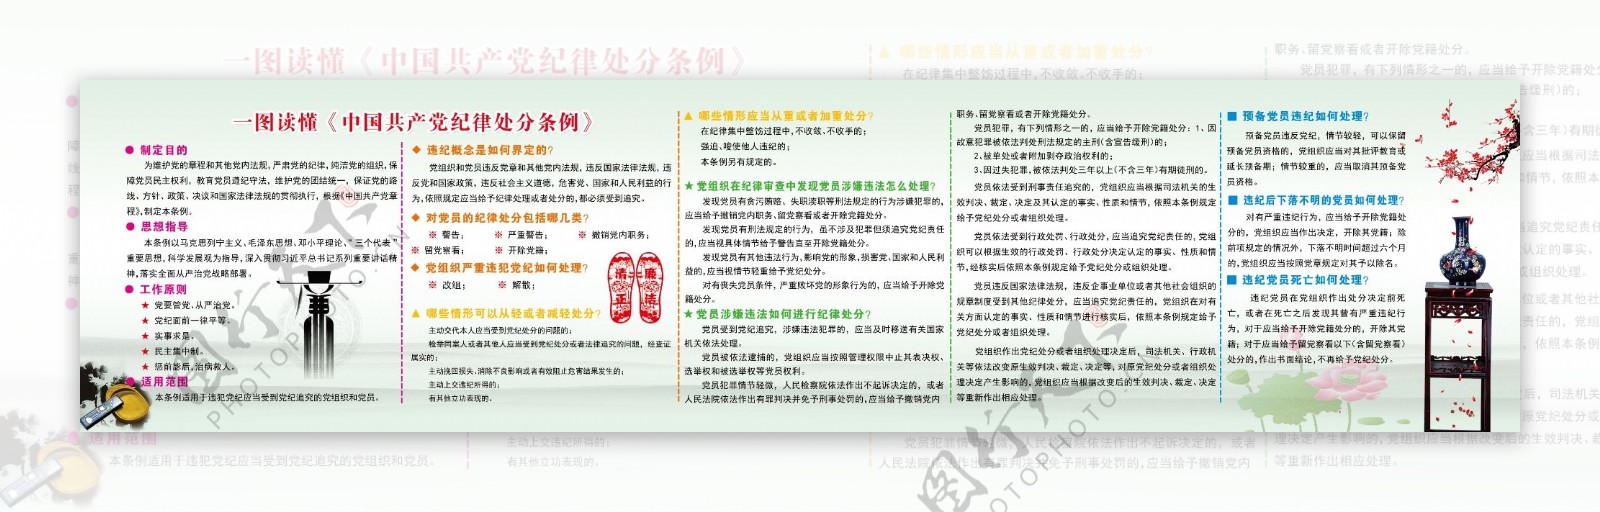 一图读懂中国共产党纪律处分条例